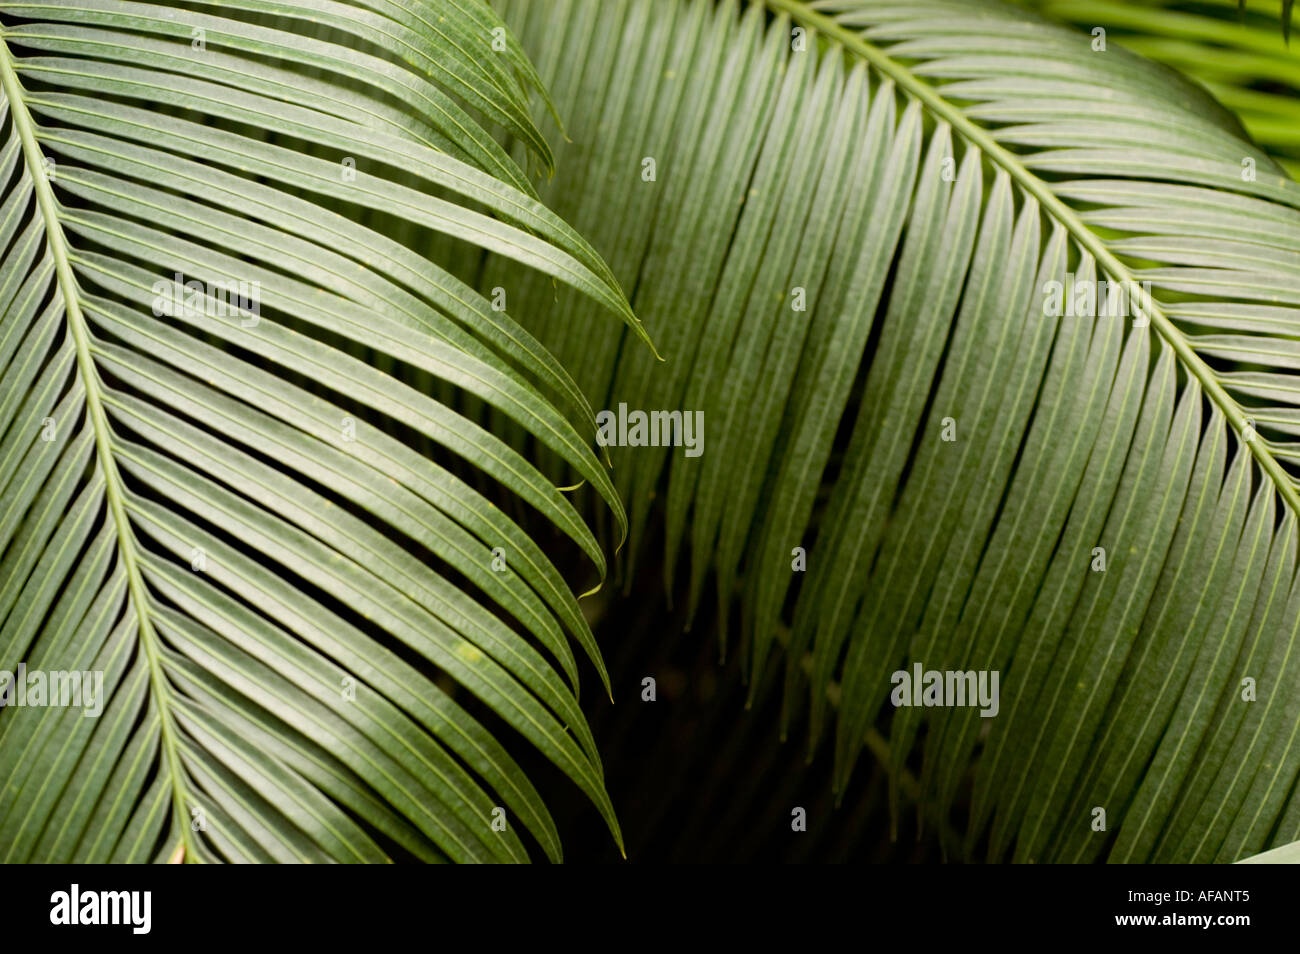 Queen sago palm Cycadaceae Cycas circinalis Sri Lanka Philipina Malaysia Stock Photo